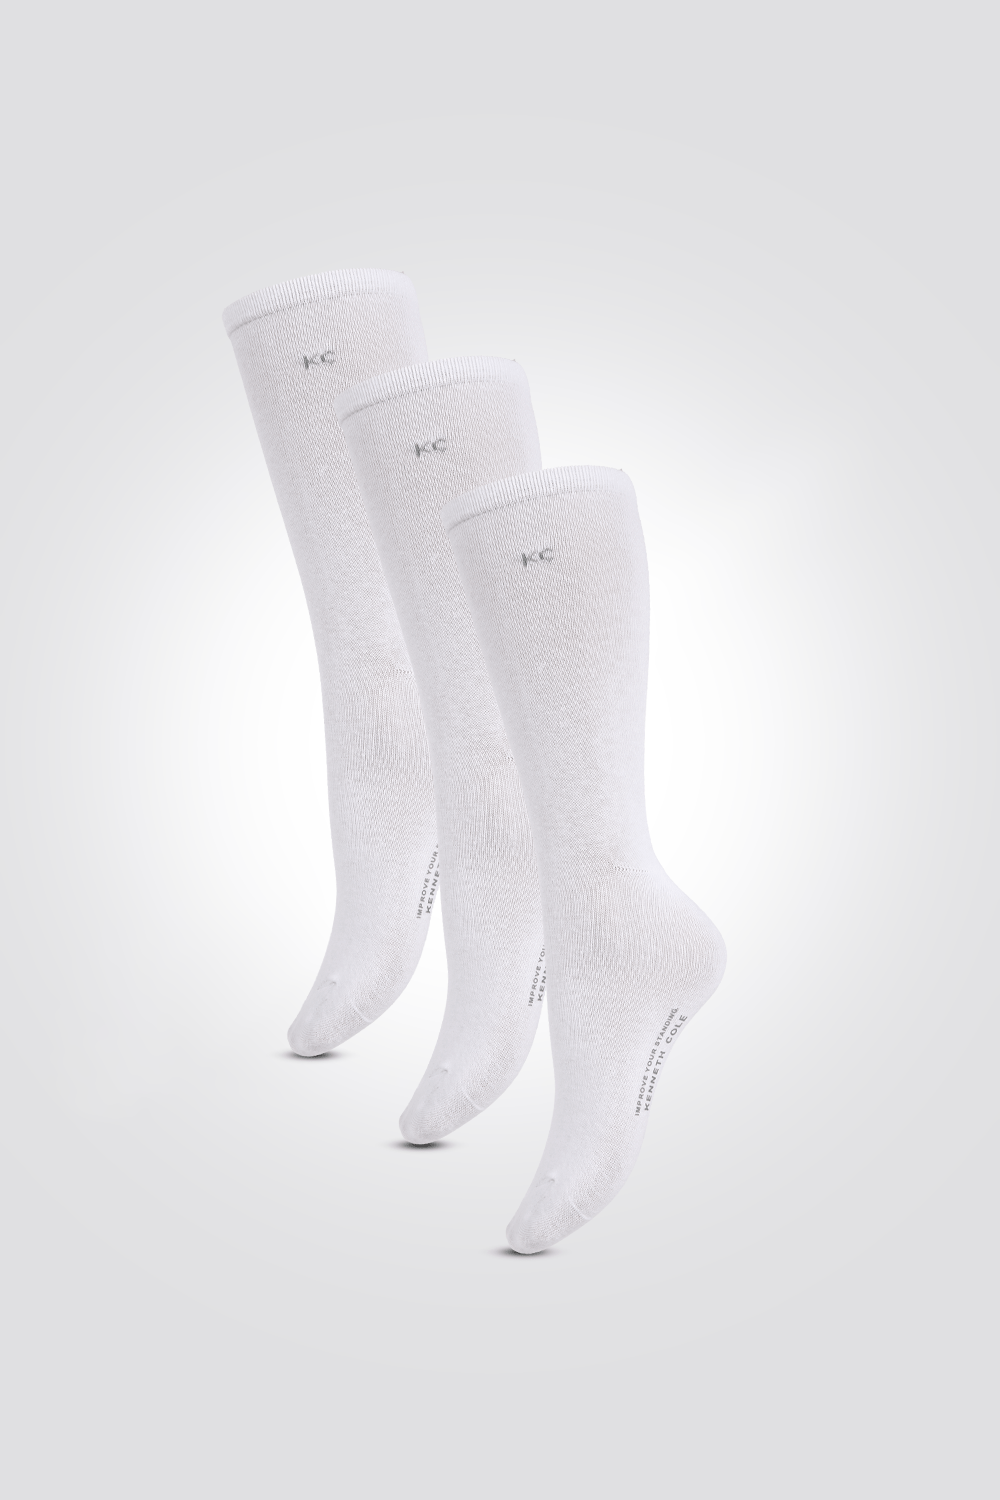 KENNETH COLE - שלישיית זוגות גרביים לגברים חלקות בצבע לבן - MASHBIR//365